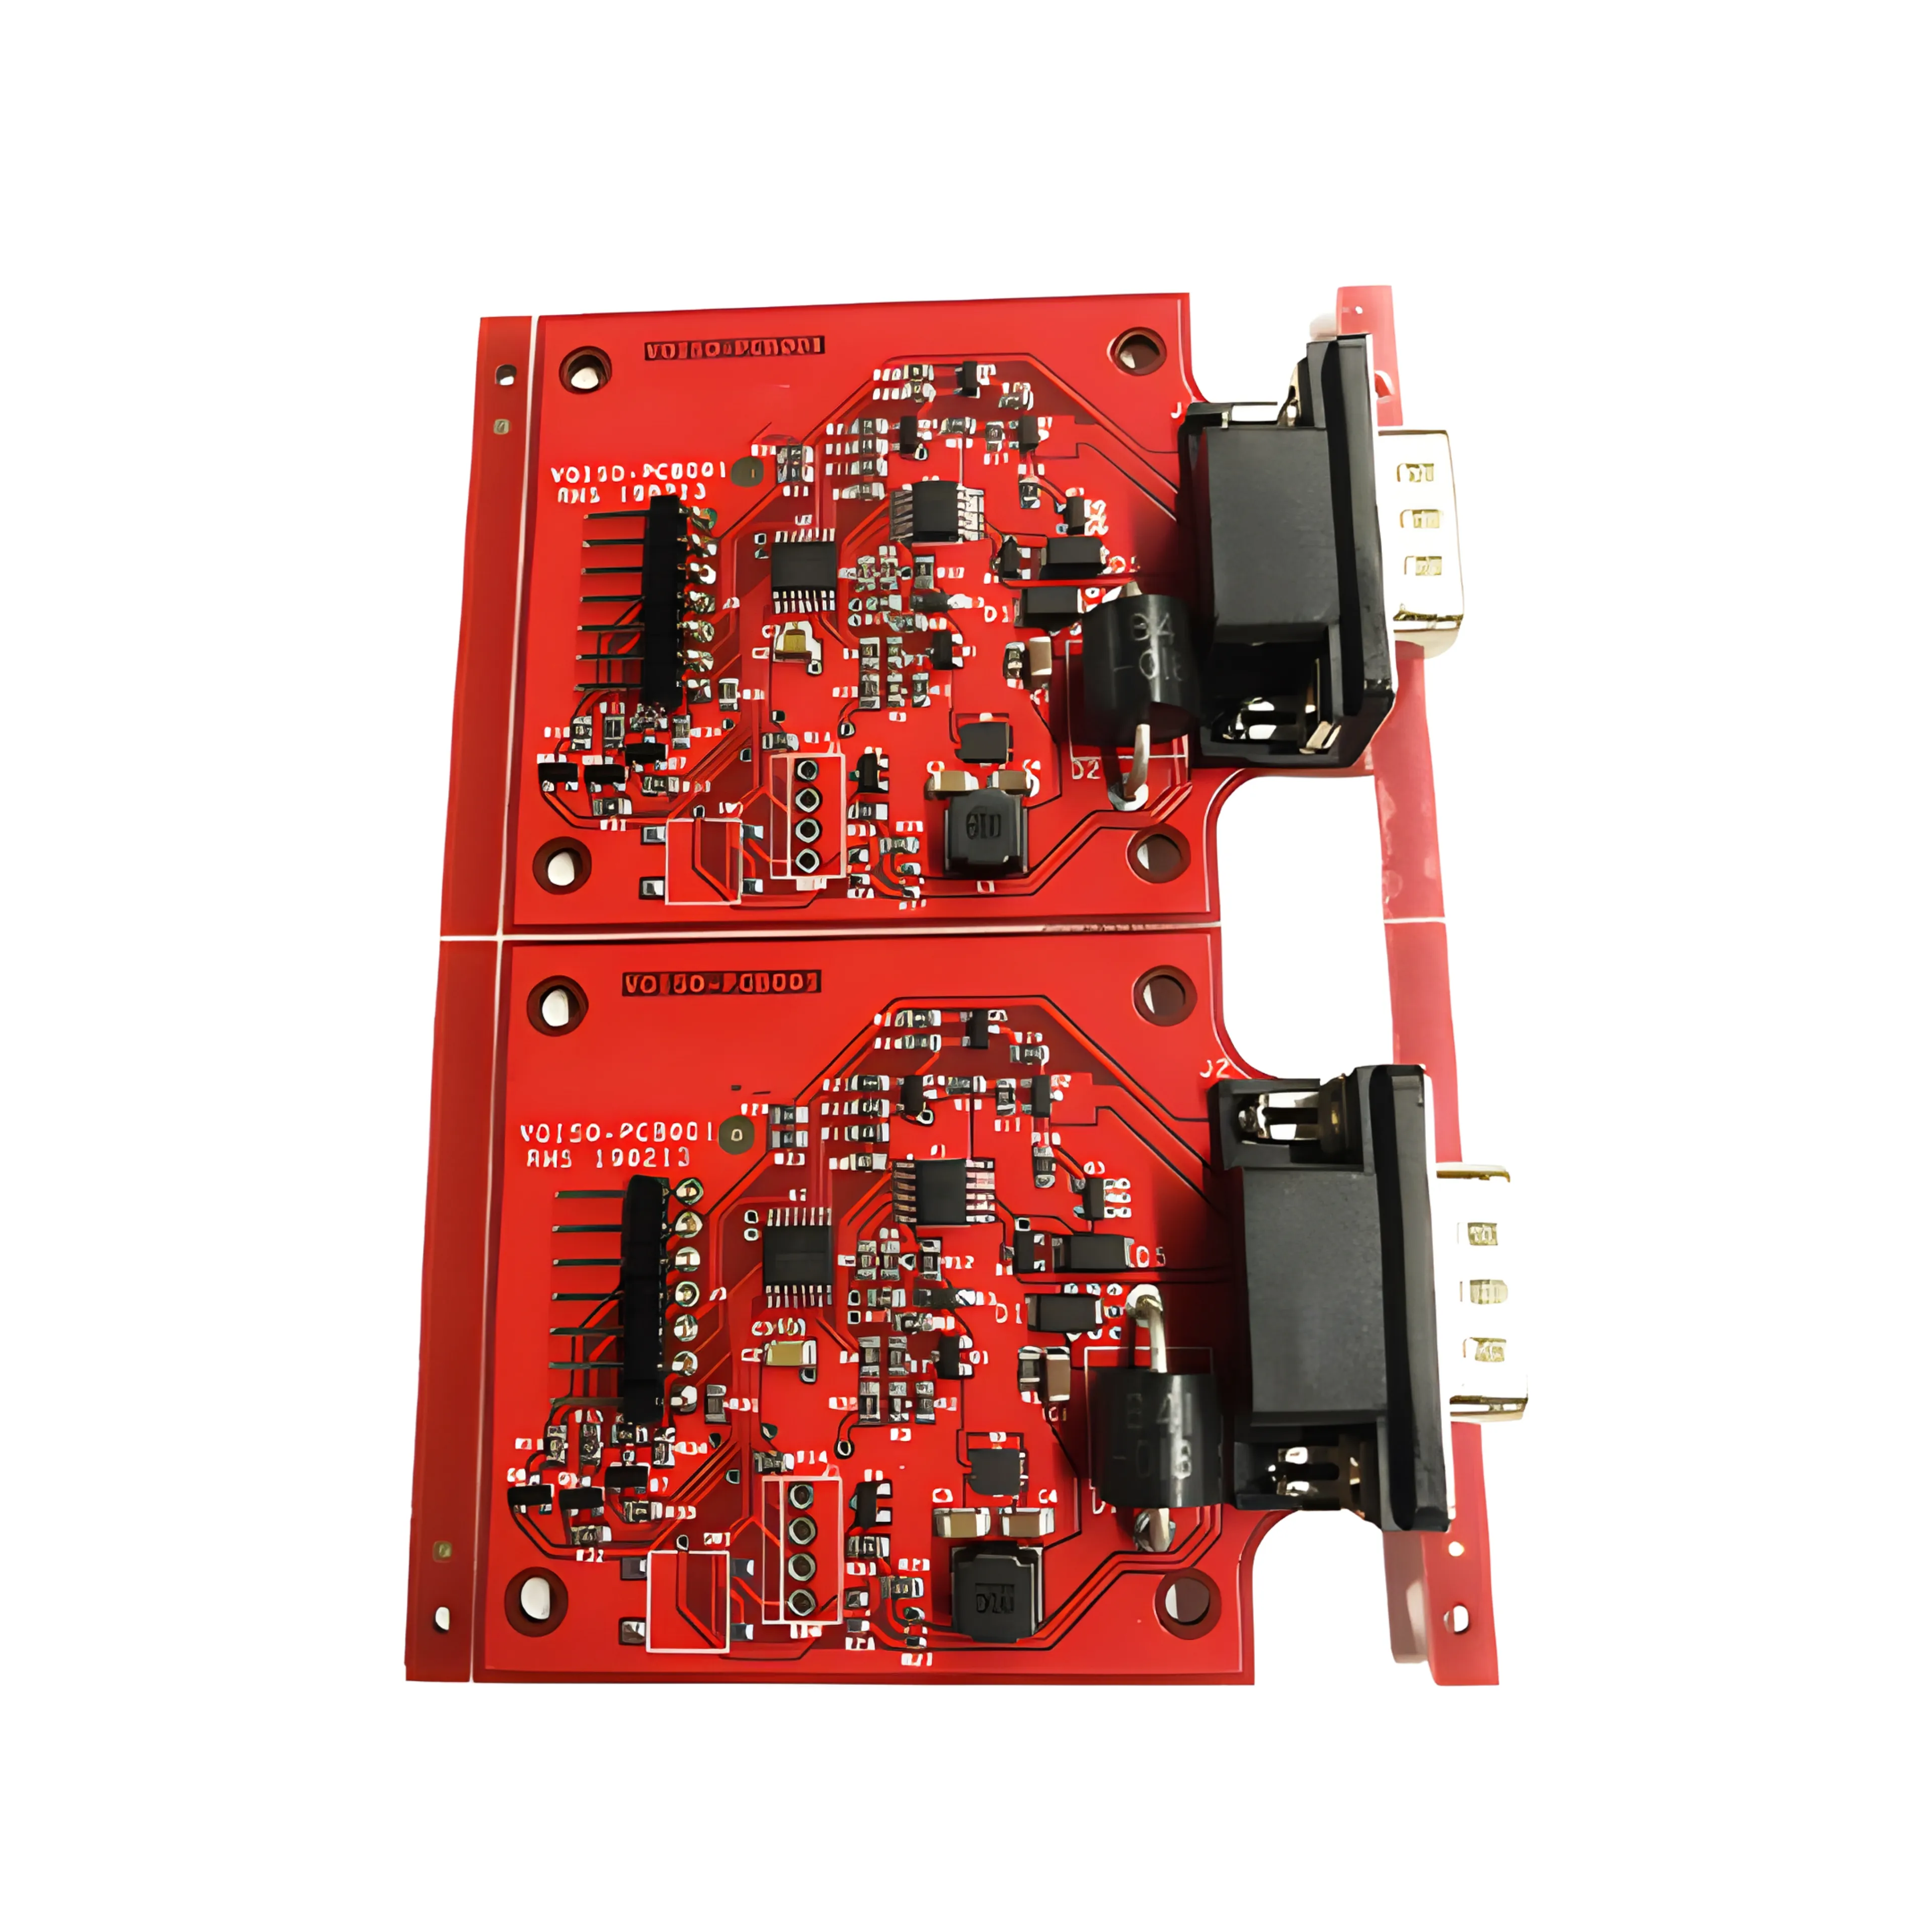 Usine de fabrication d'assemblage rapide de pcb/pcba à haut coût rentable toutes sortes de conception de carte de circuit imprimé électronique grand public